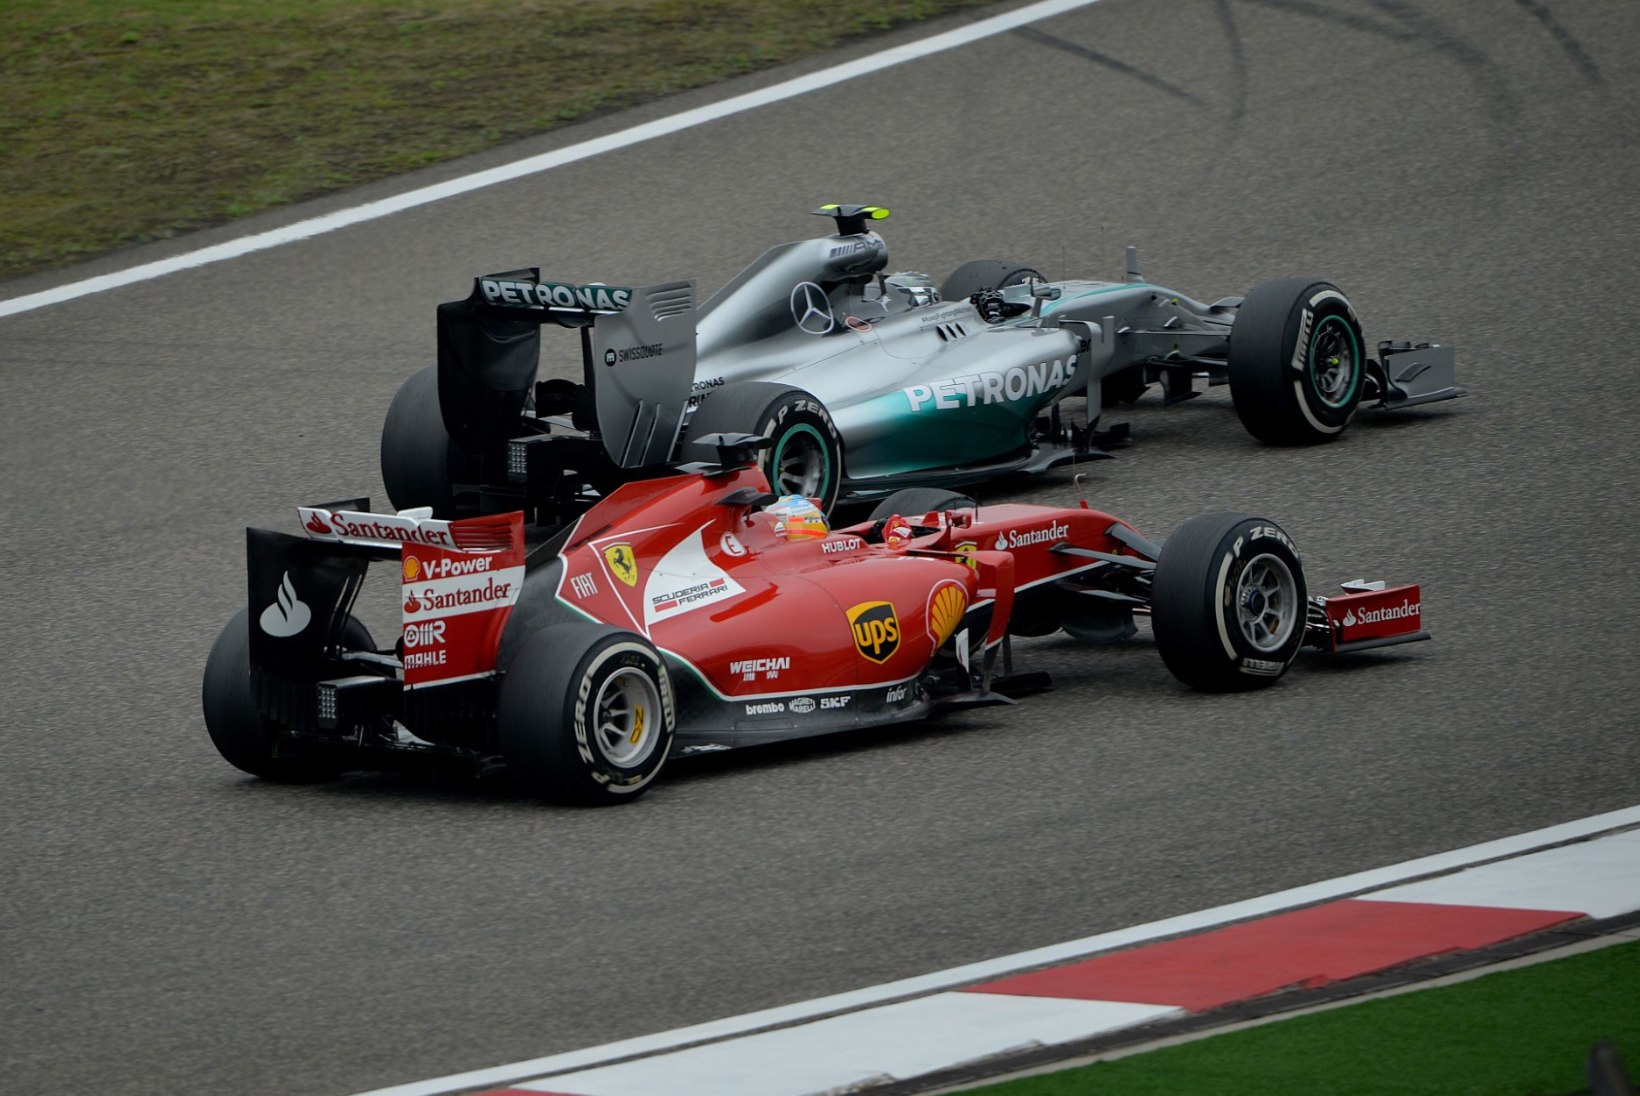 FOTOD: Hiina GP tänaste vabatreeningute kiireimad olid Alonso ja Hamilton